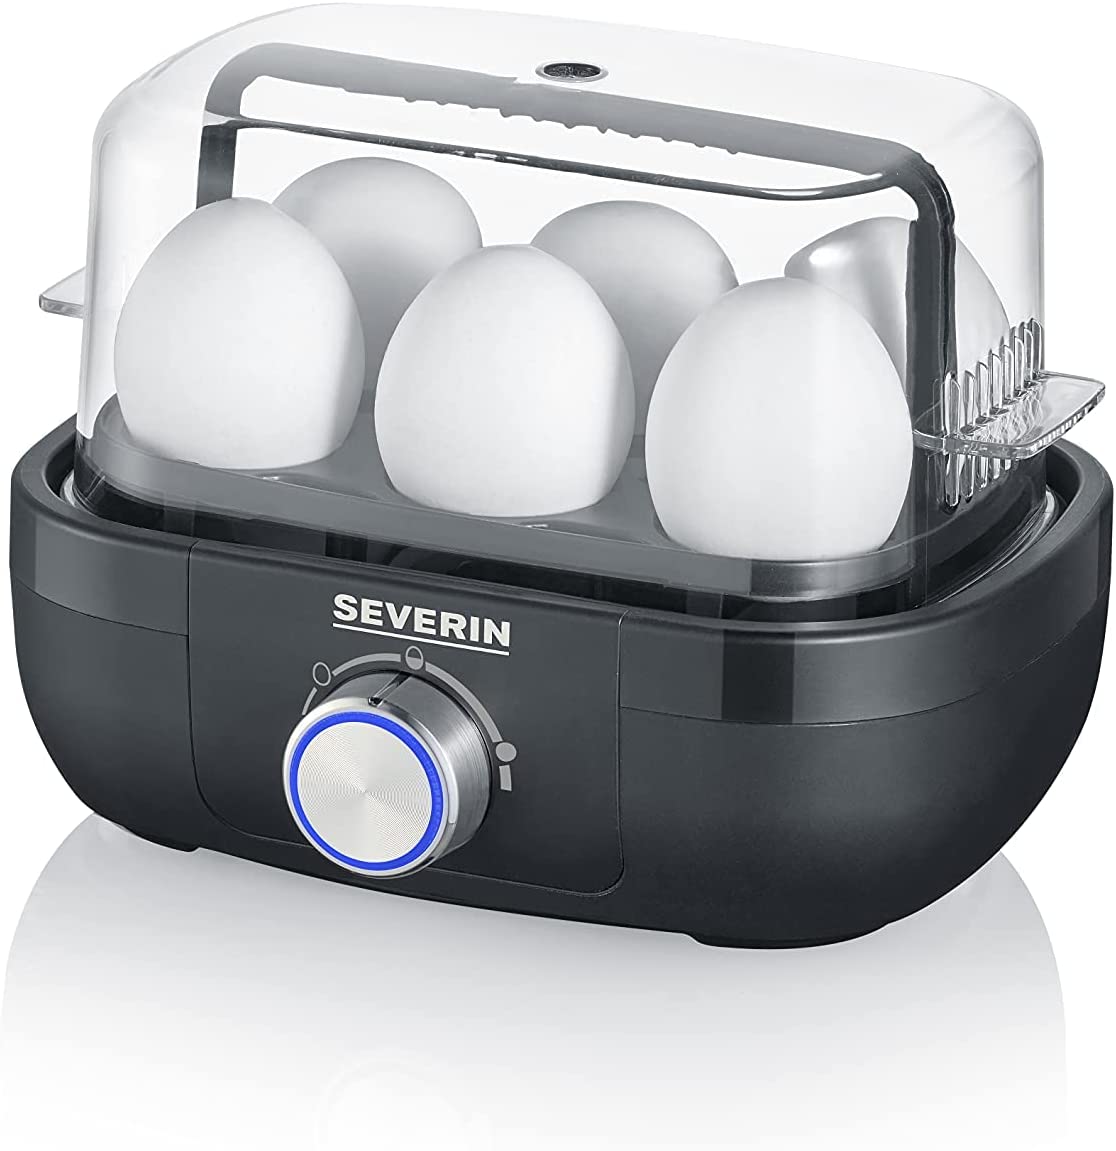 SEVERIN 3166 Egg Boiler 420 Plastic / Stainless Steel Black